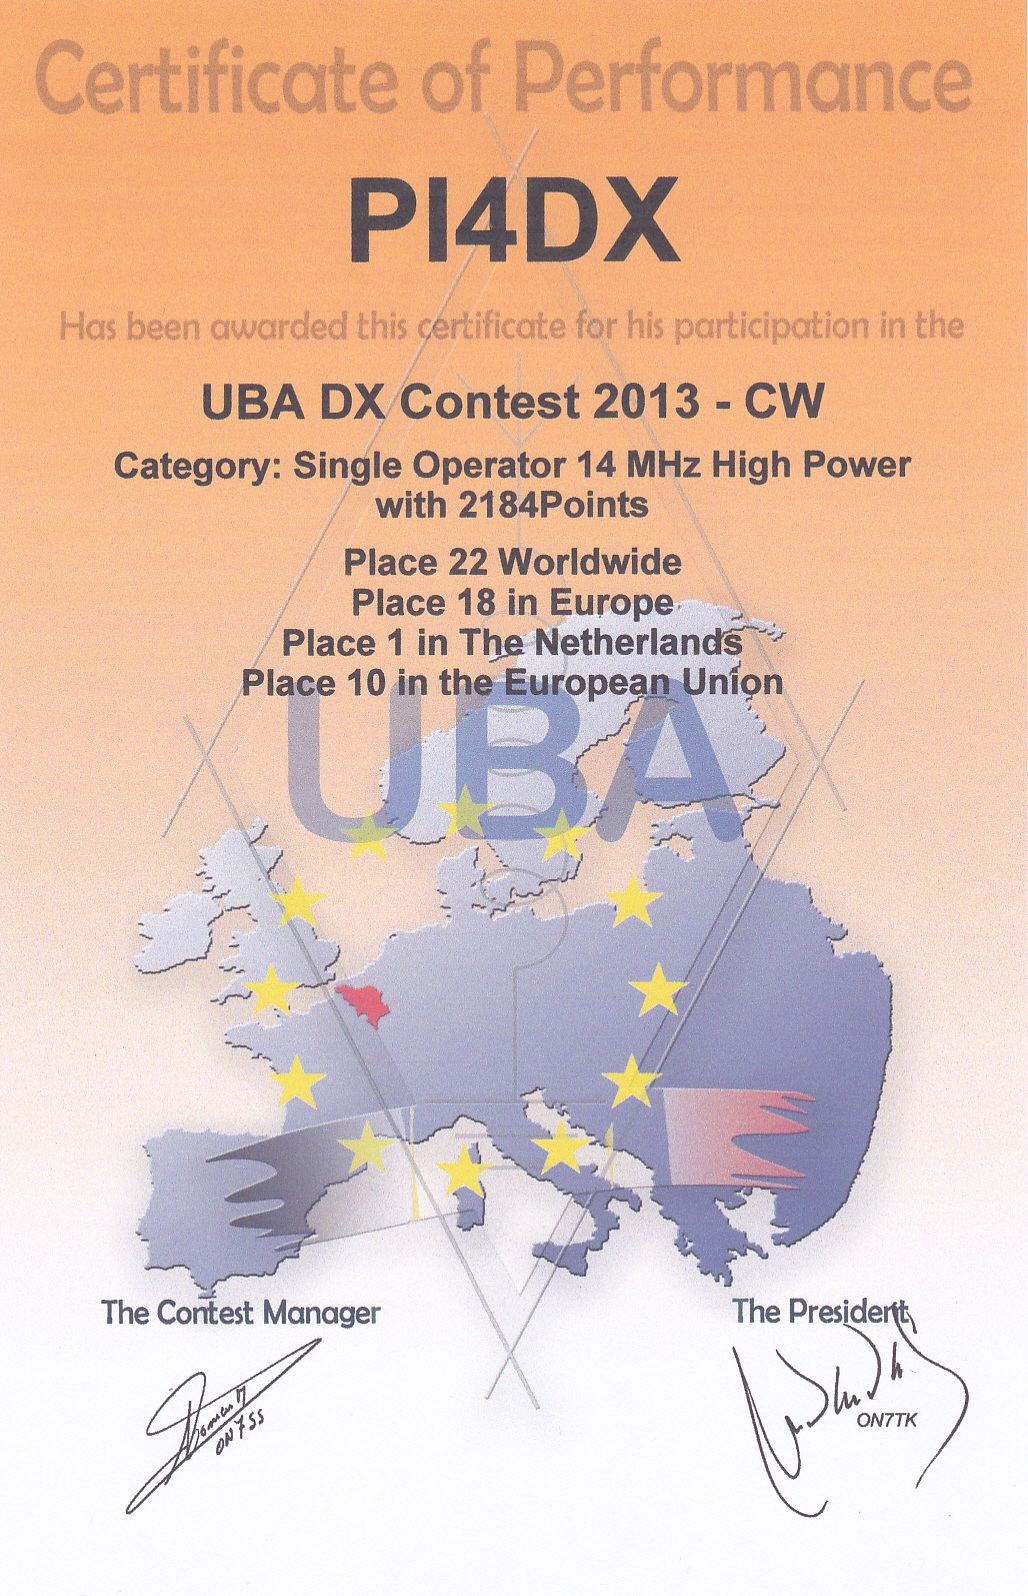 2013 UBA DX CW PI4DX